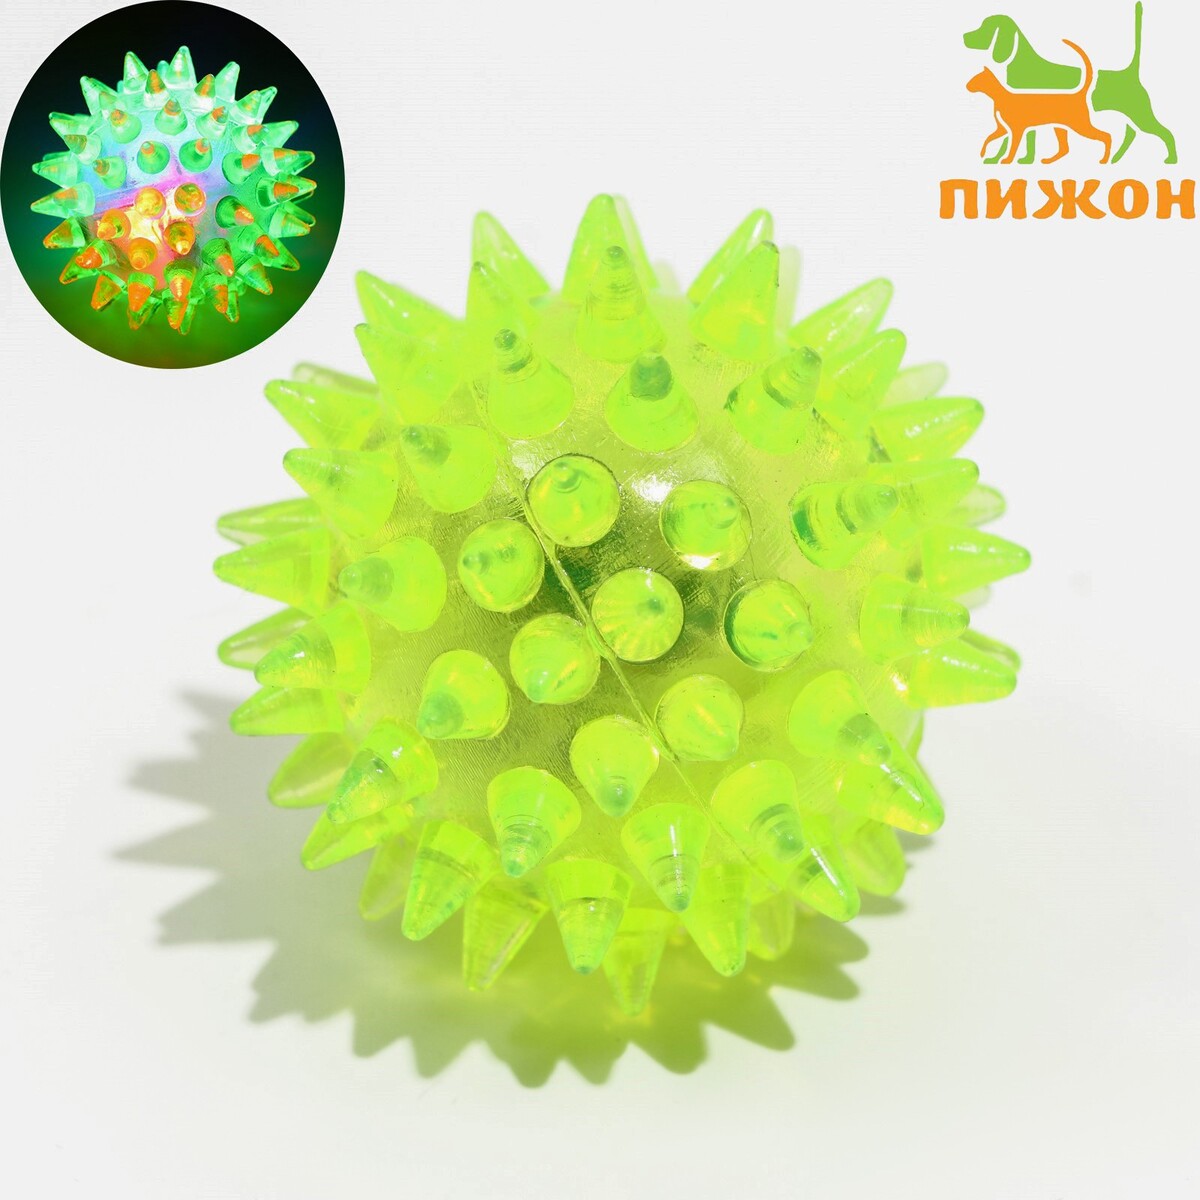 Мяч светящийся для животных малый, tpr, 4,5 см, желтый мяч светящийся для животных малый tpr 4 5 см желтый